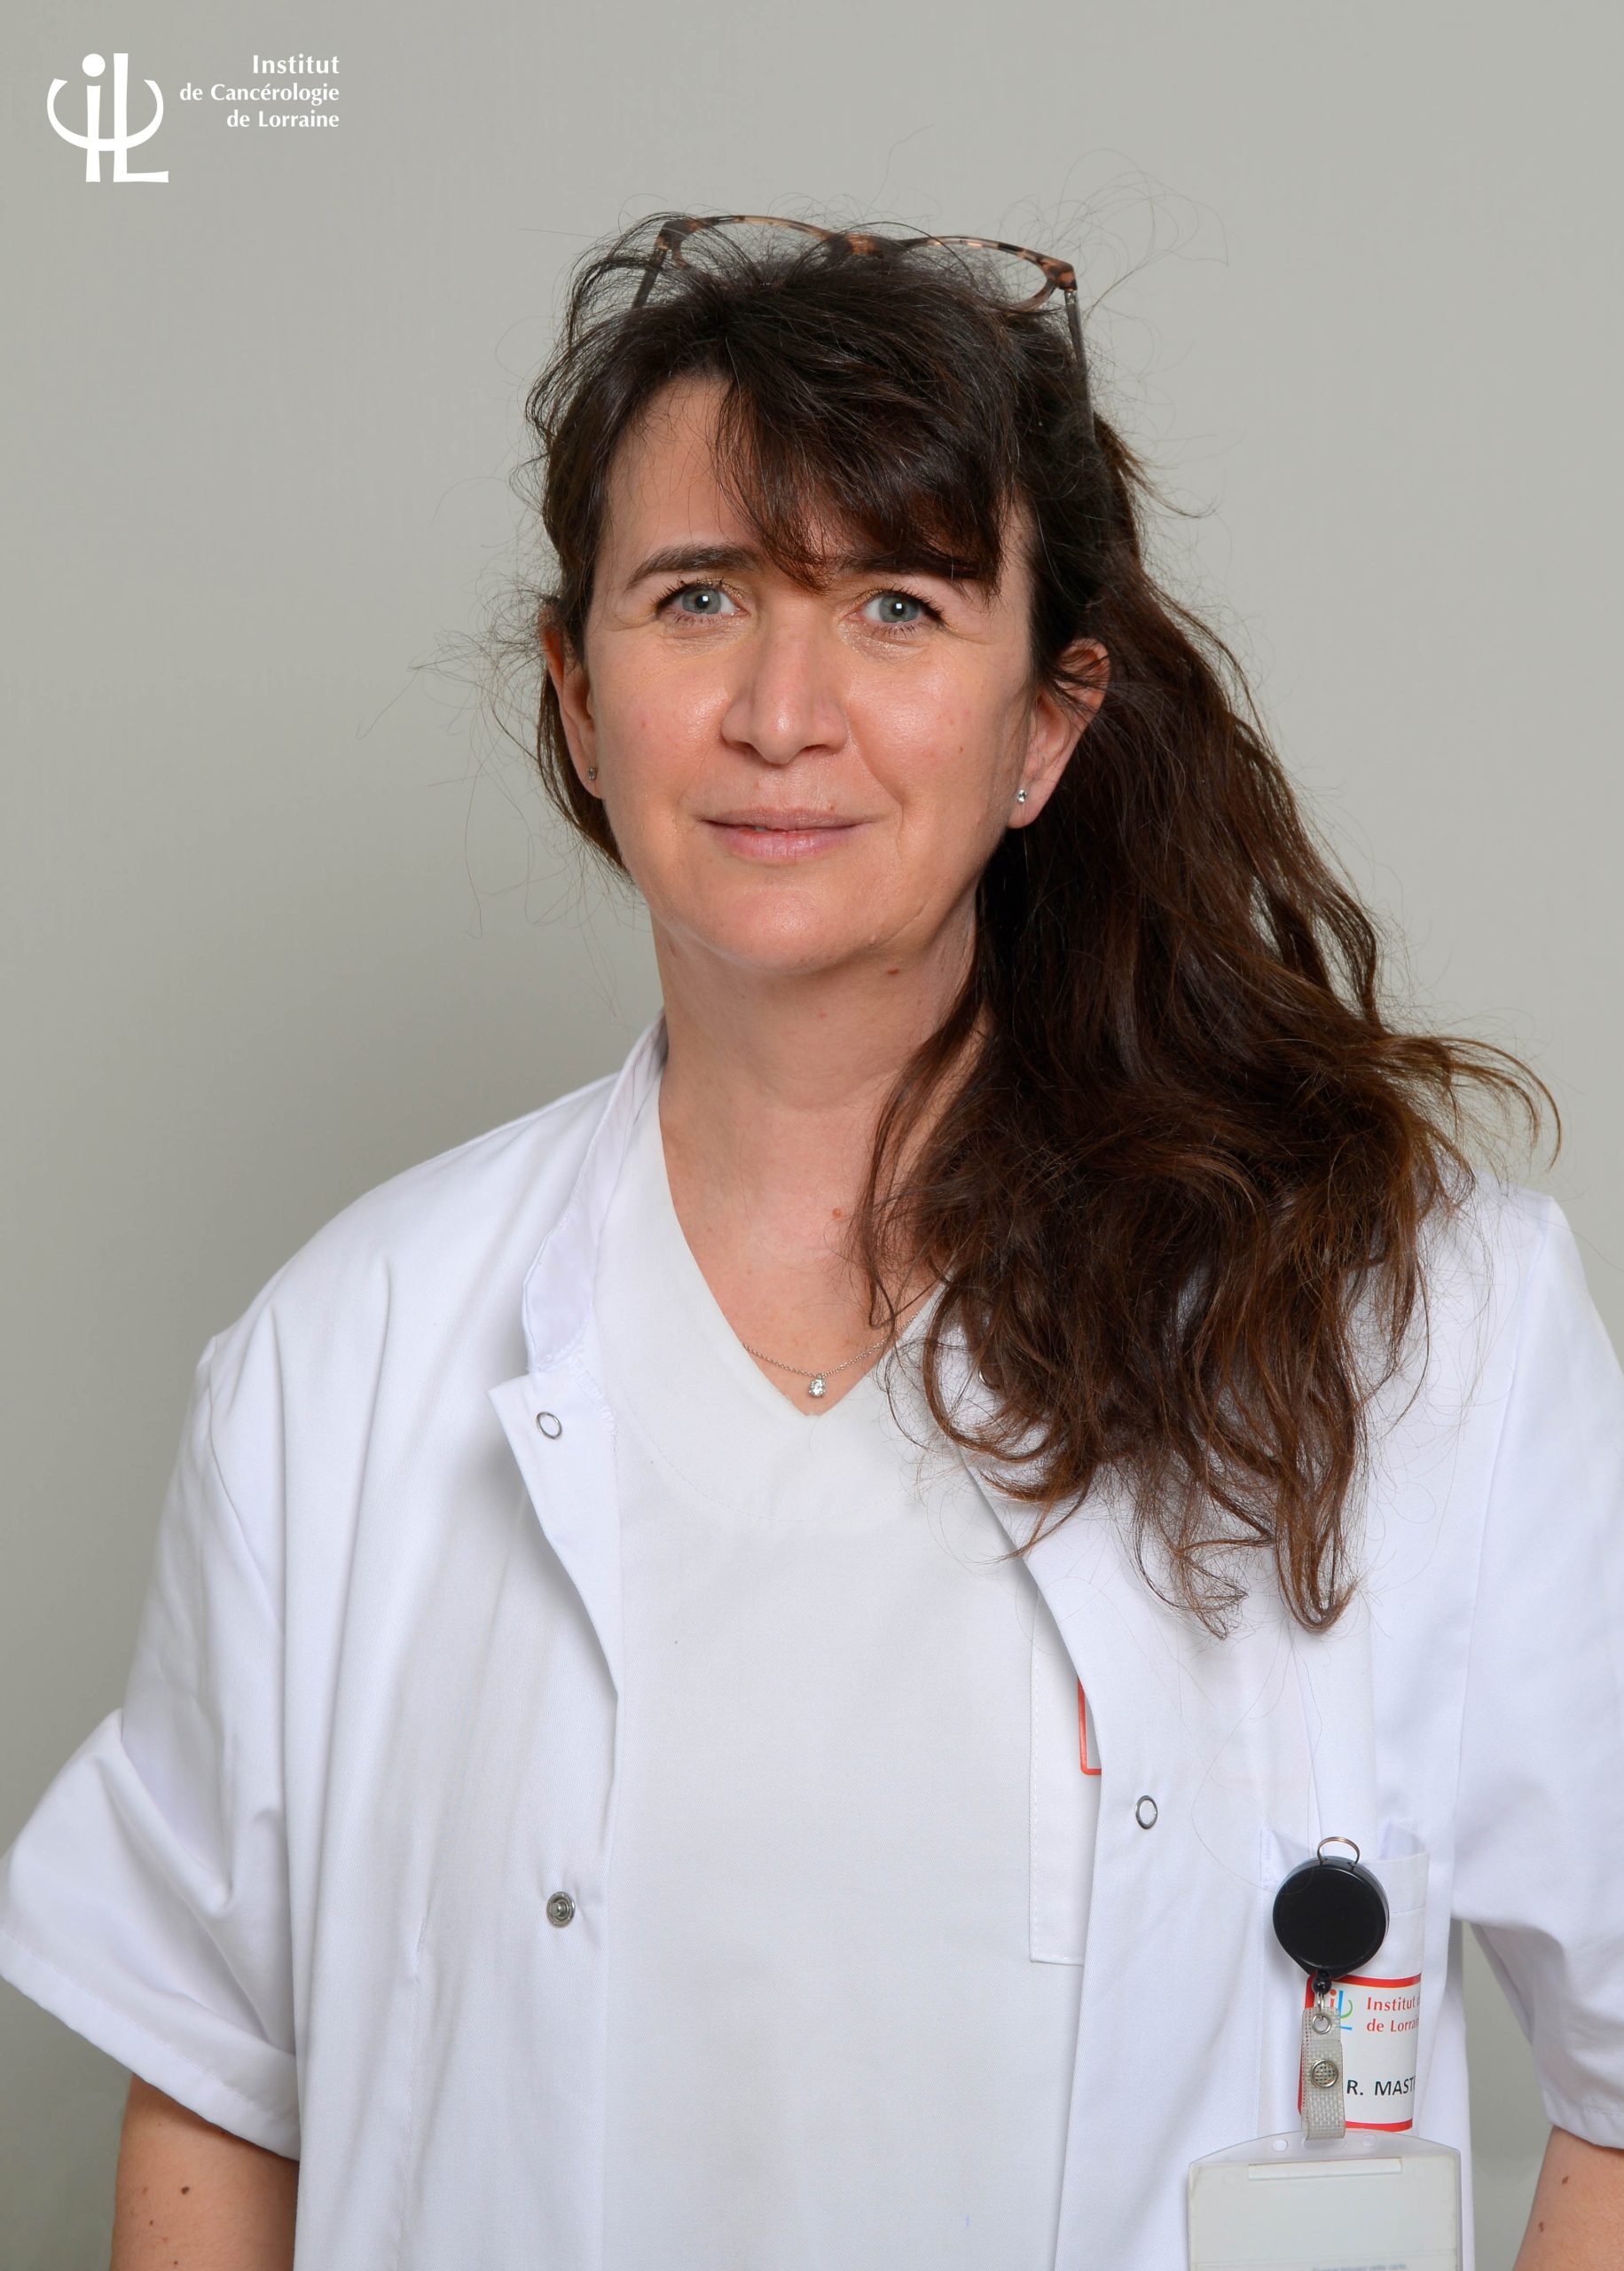 Dr MASTRONICOLA Romina